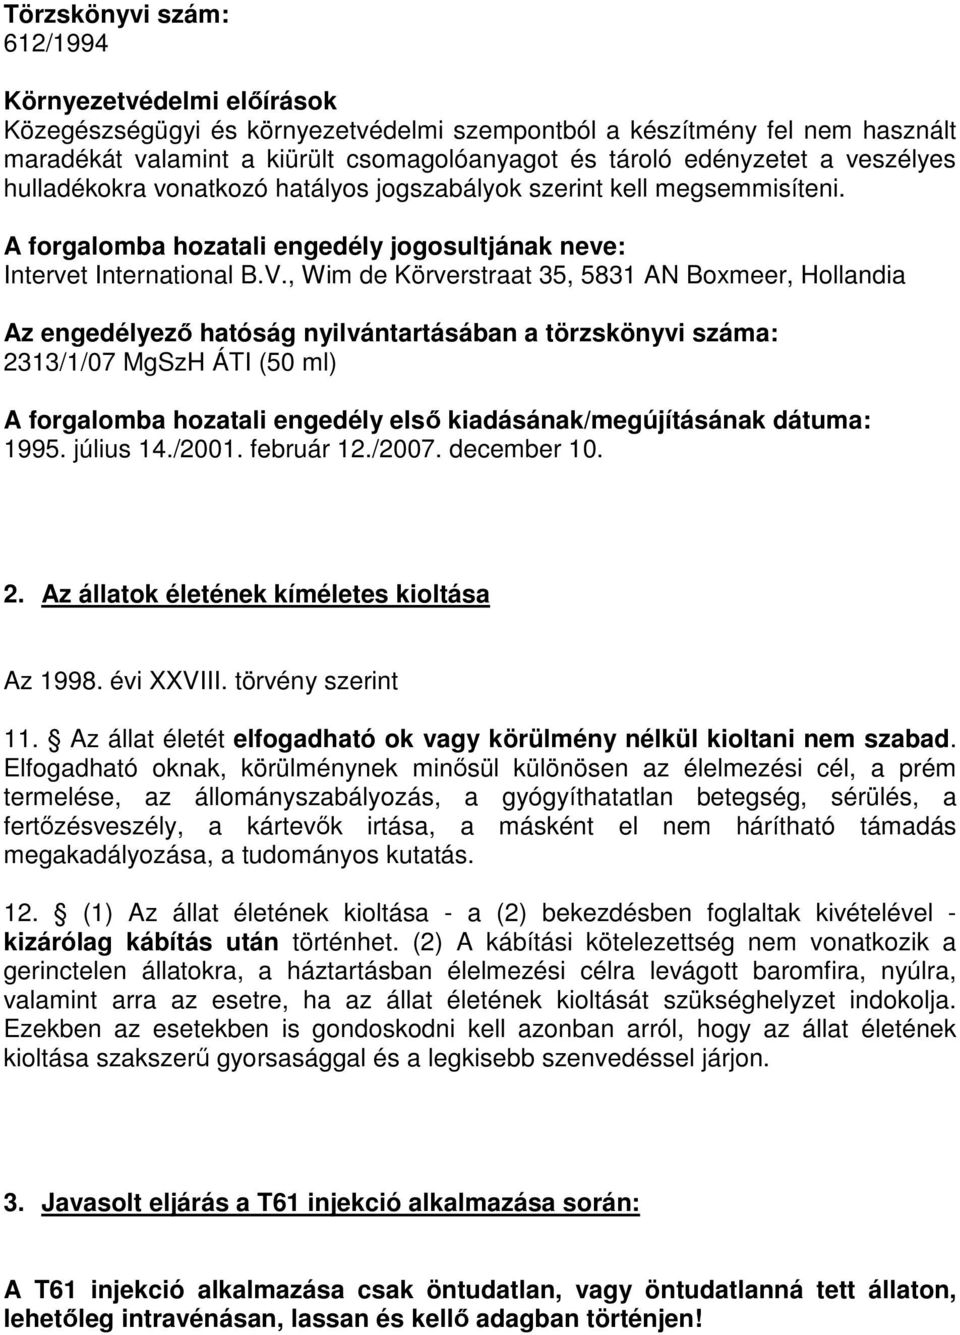 , Wim de Körverstraat 35, 5831 AN Boxmeer, Hollandia Az engedélyező hatóság nyilvántartásában a törzskönyvi száma: 2313/1/07 MgSzH ÁTI (50 ml) A forgalomba hozatali engedély első